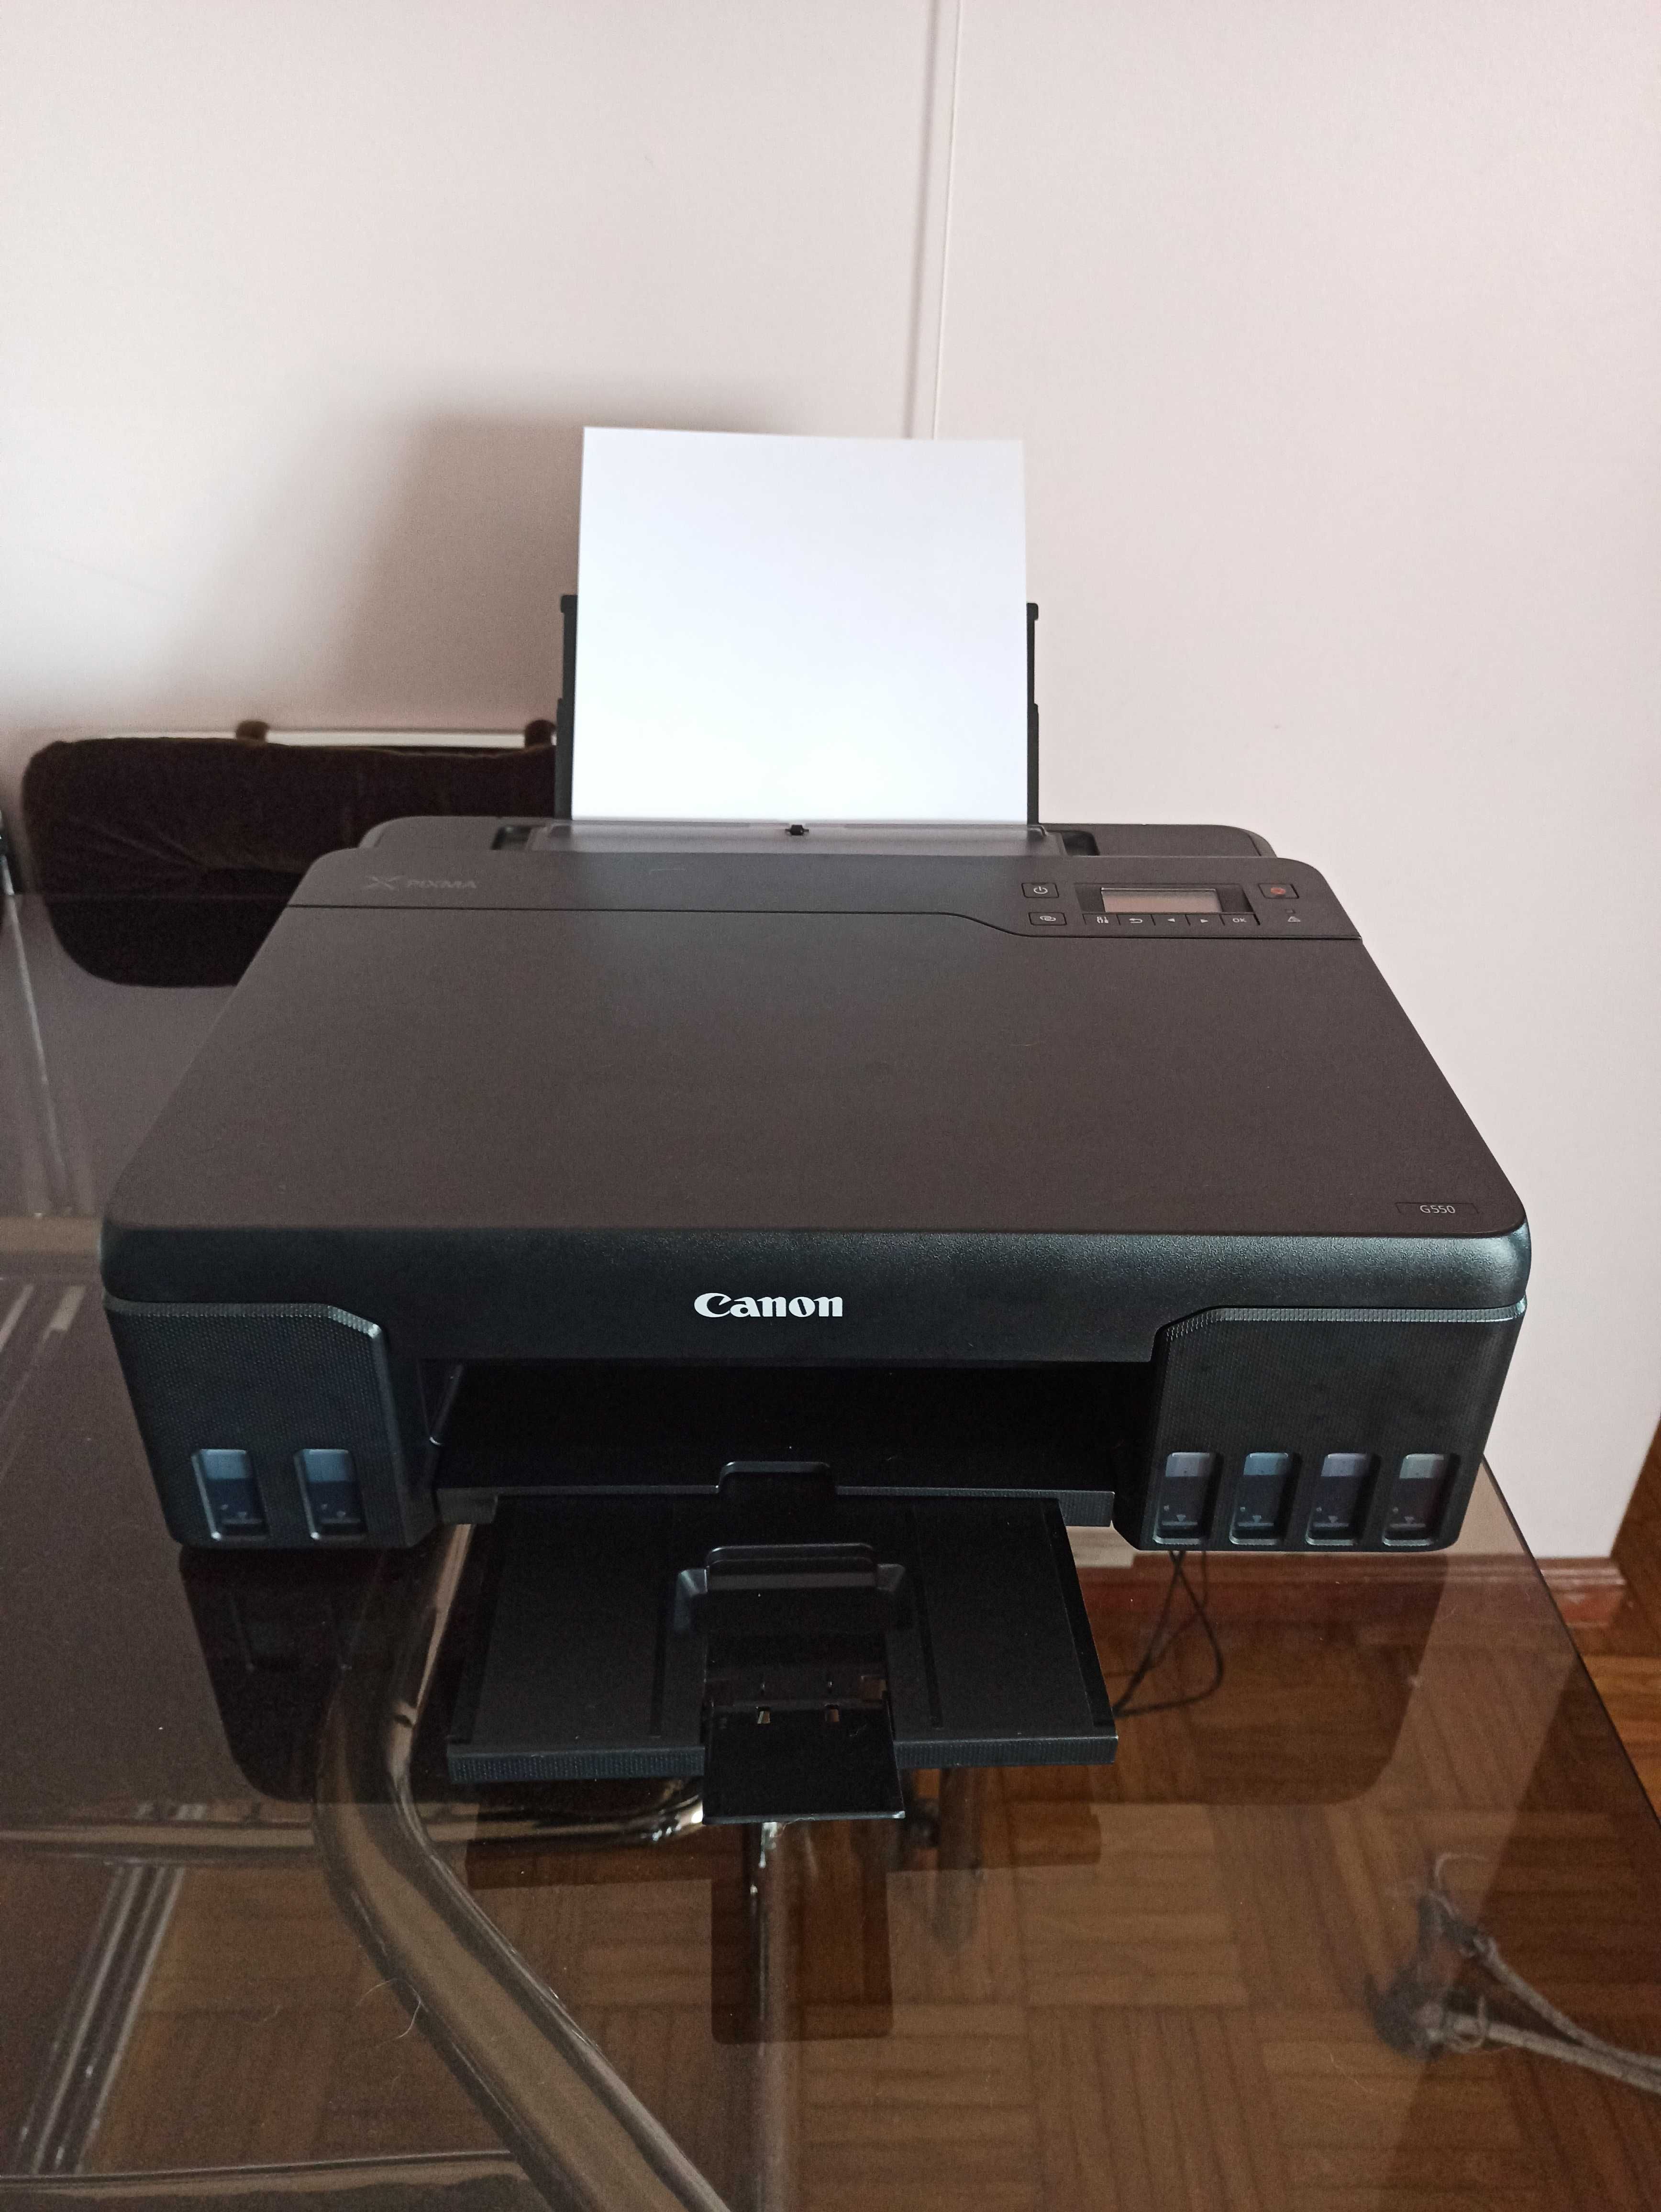 Impressora pixma canon G550 (Wi-fi) - Perfeita para Fotos